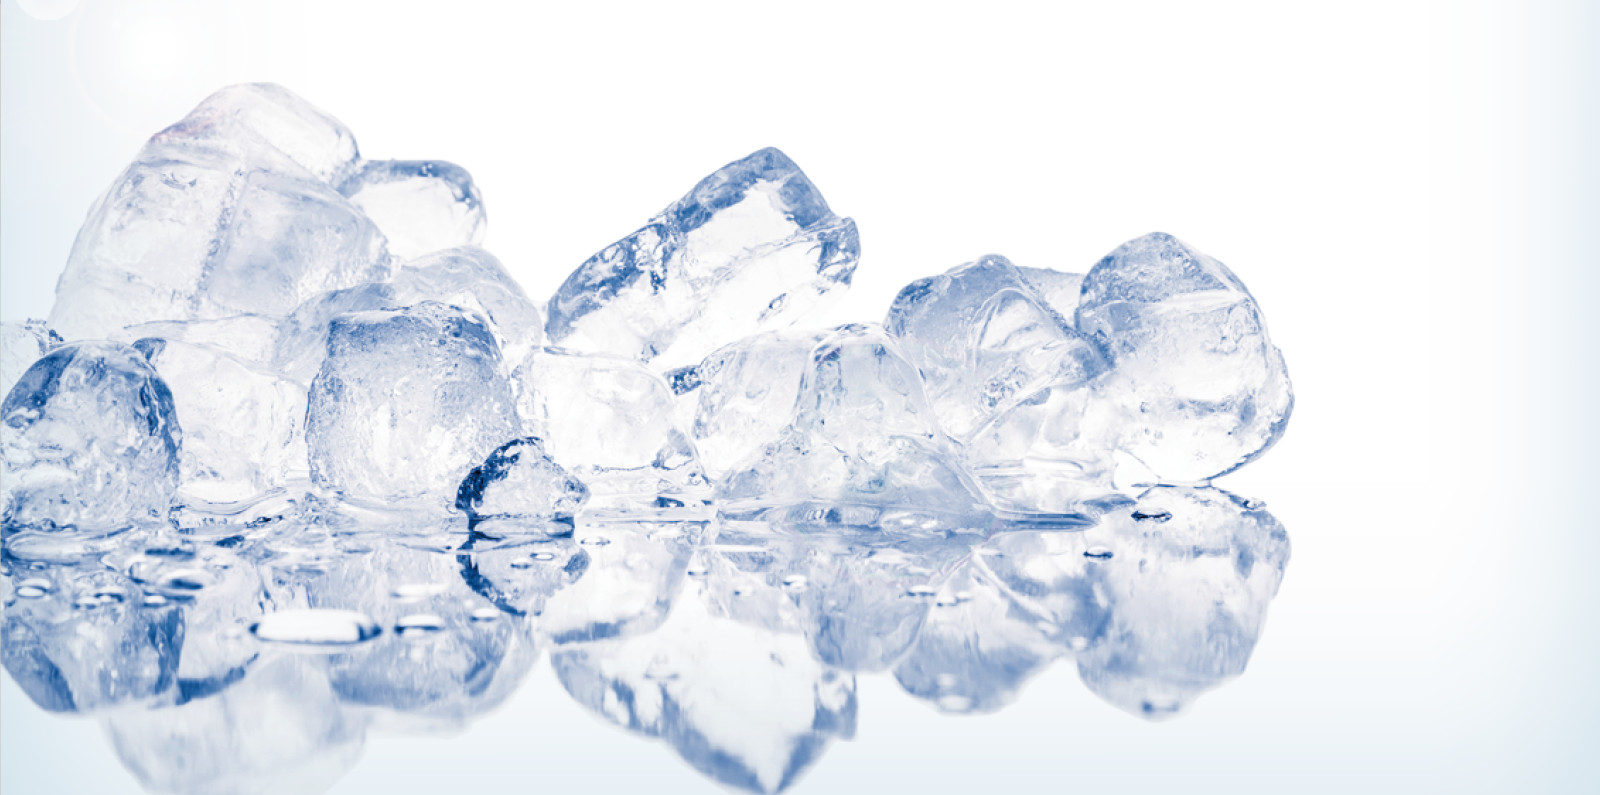 九州製氷株式会社 九州から世界へ 世界から九州へ 氷の製造販売 冷凍 冷蔵倉庫業の九州製氷株式会社のホームページです 氷についてはお任せください